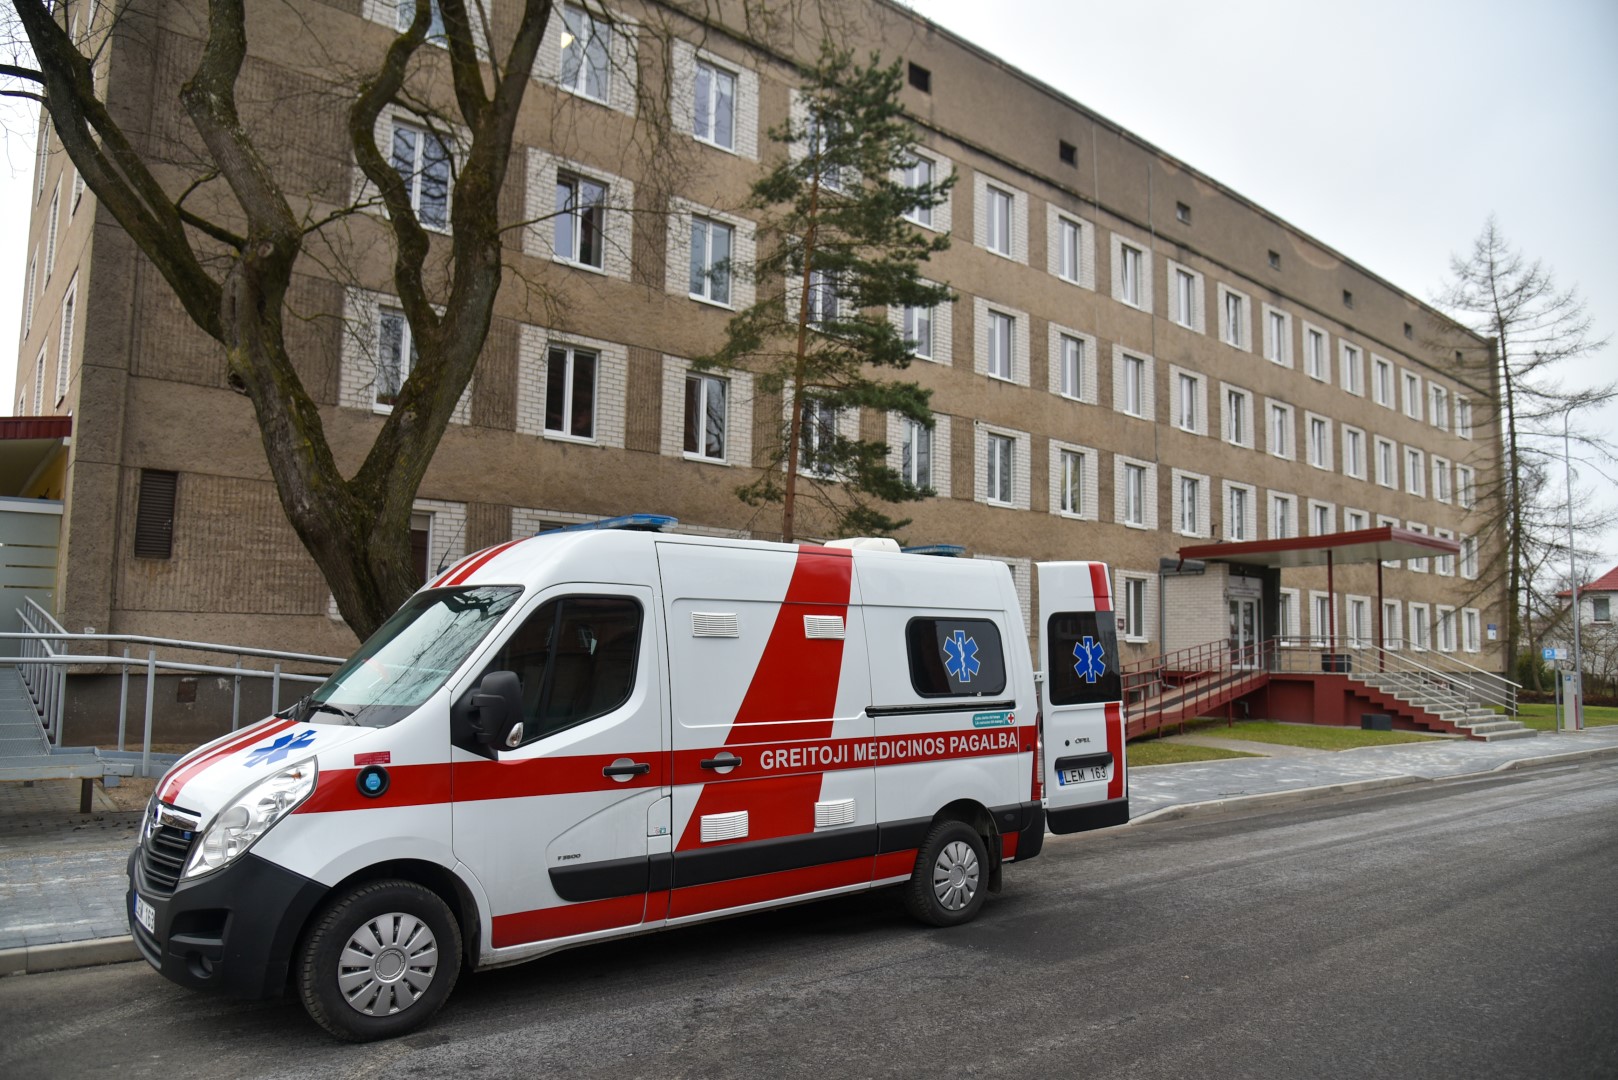 Net ir tebesiaučiant pandemijai, Vilniaus, Kėdainių, Ukmergės, Pakruojo ligoninių pacientus jau gali aplankyti artimieji.